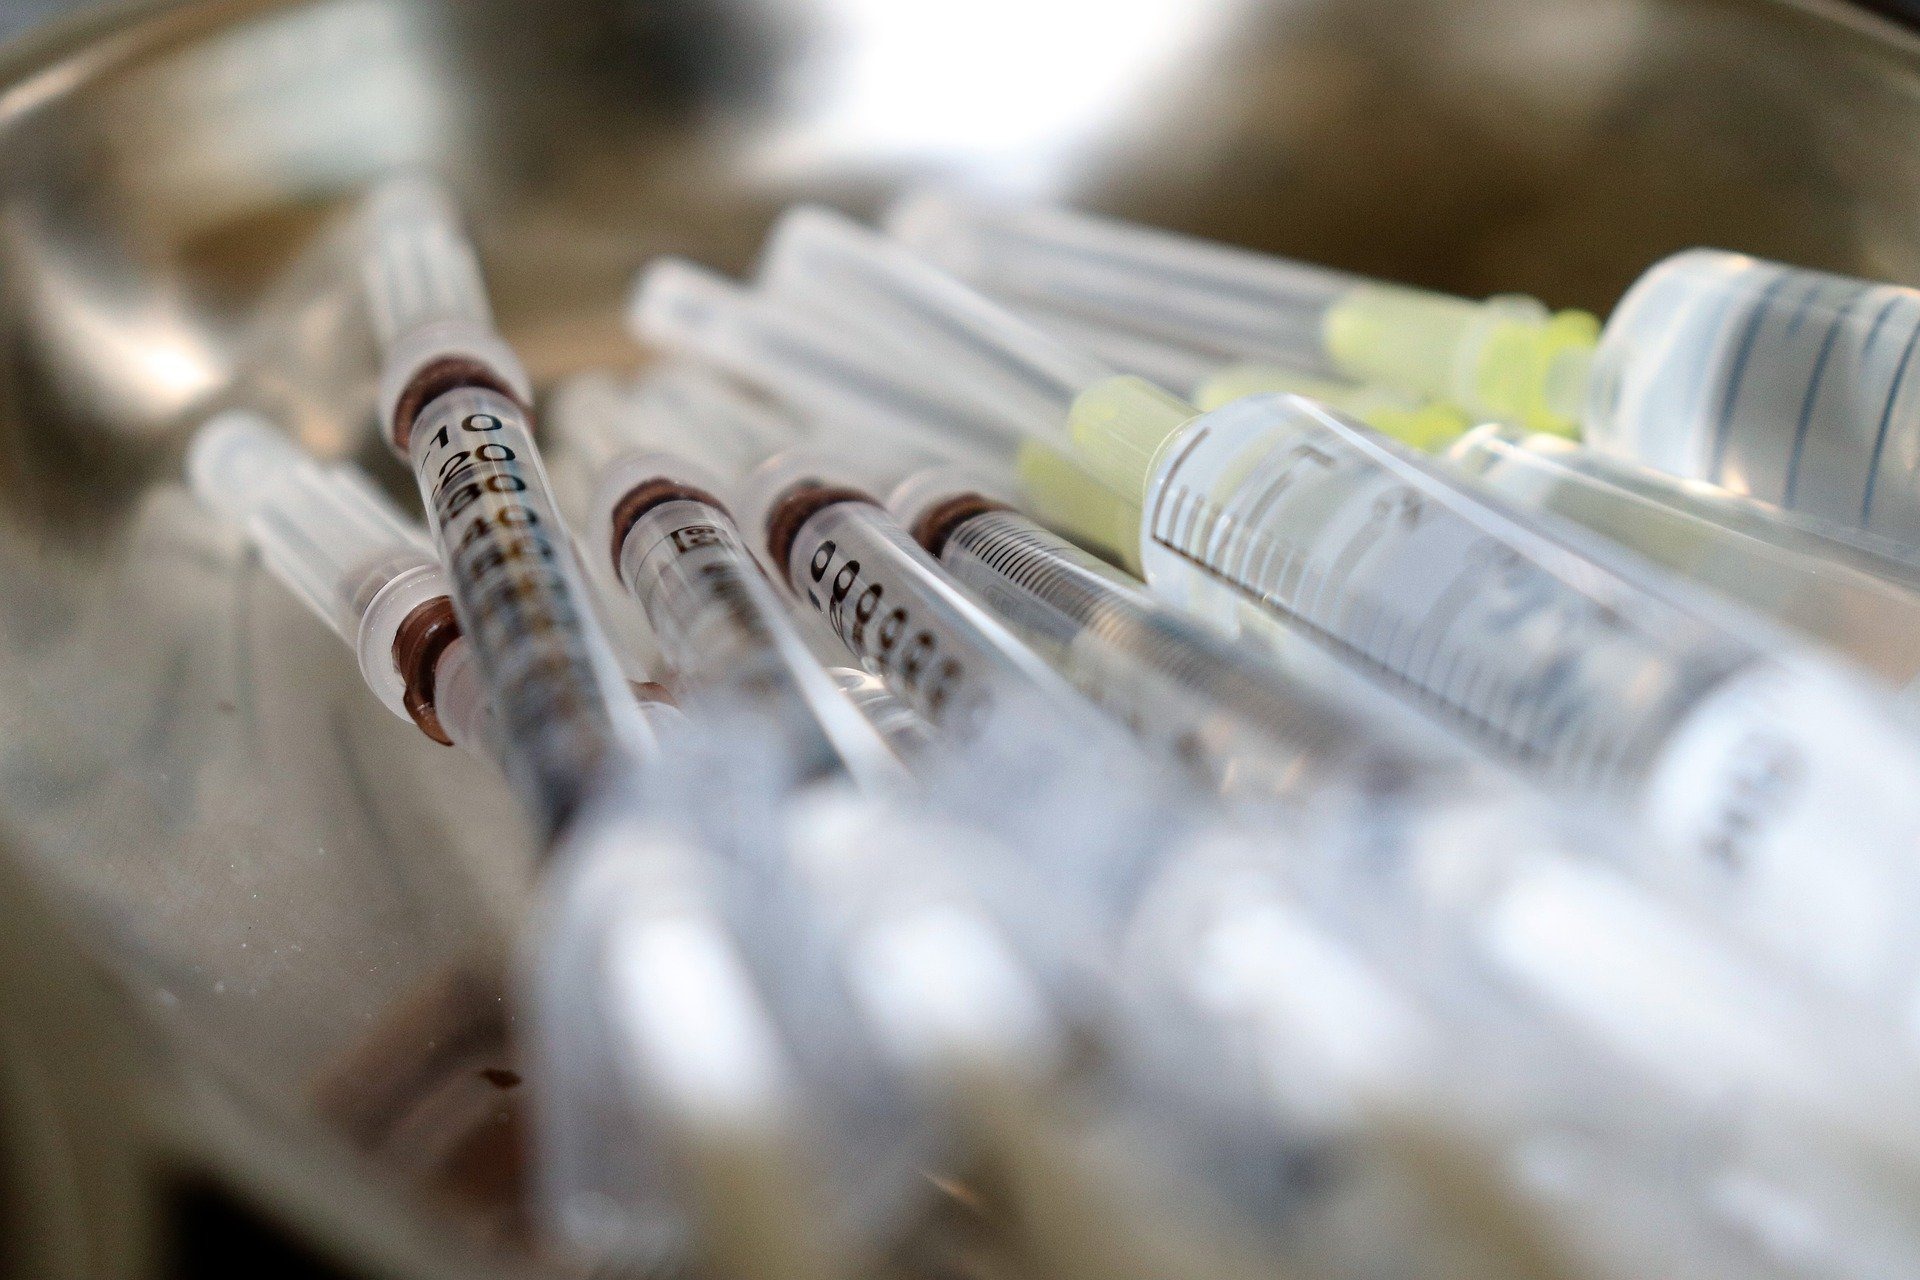 Първите дози от ваксината на Пфайзер/Бионтех получиха редица страни от ЕС